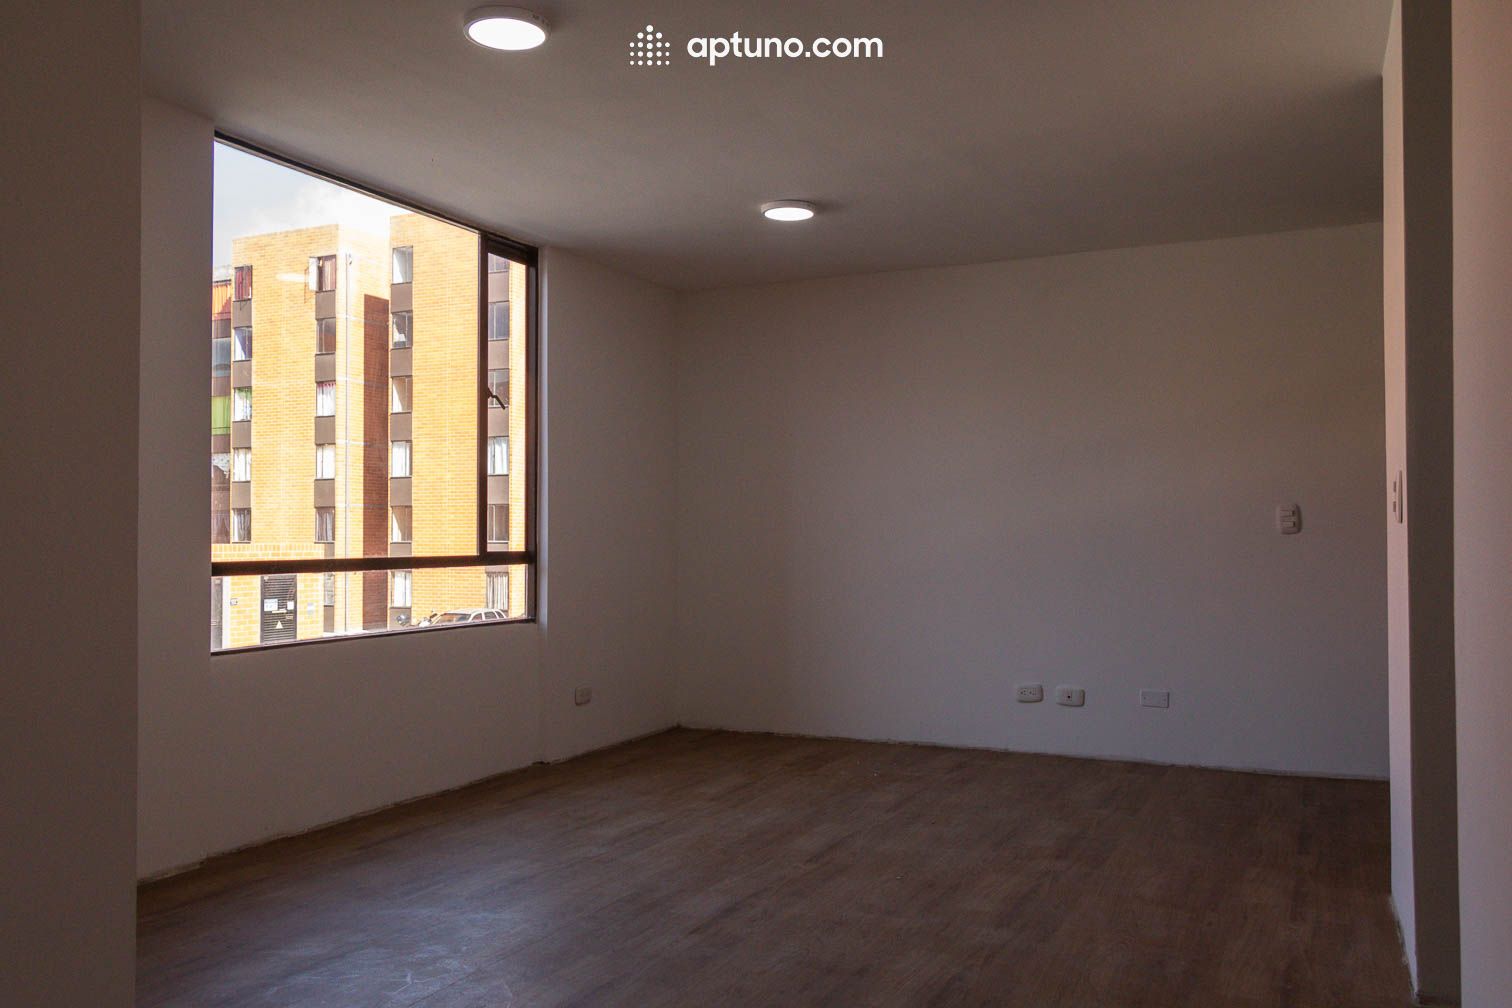 Apartamento en arriendo Centro 56 m² - $ 675.000,00